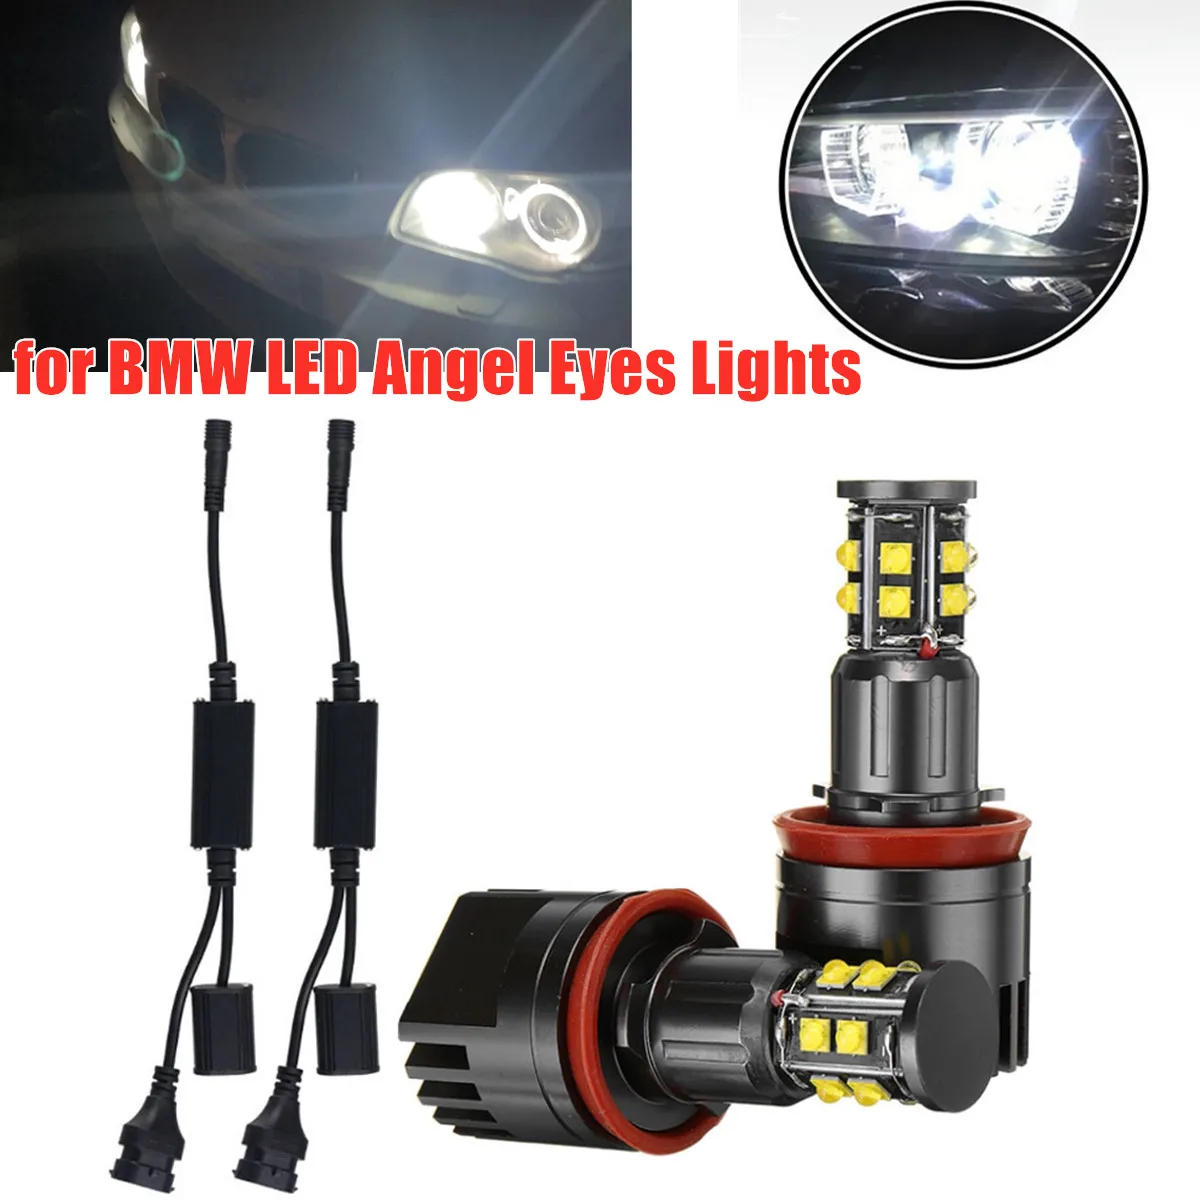 

2Pc 120W H8 LED Angel Eyes Fog Light Halo Ring Headlight Canbus for BMW E60 E61 E63 X5 E70 X6 E71 E90 E91 E92 E93 M3 E89 E82 E87